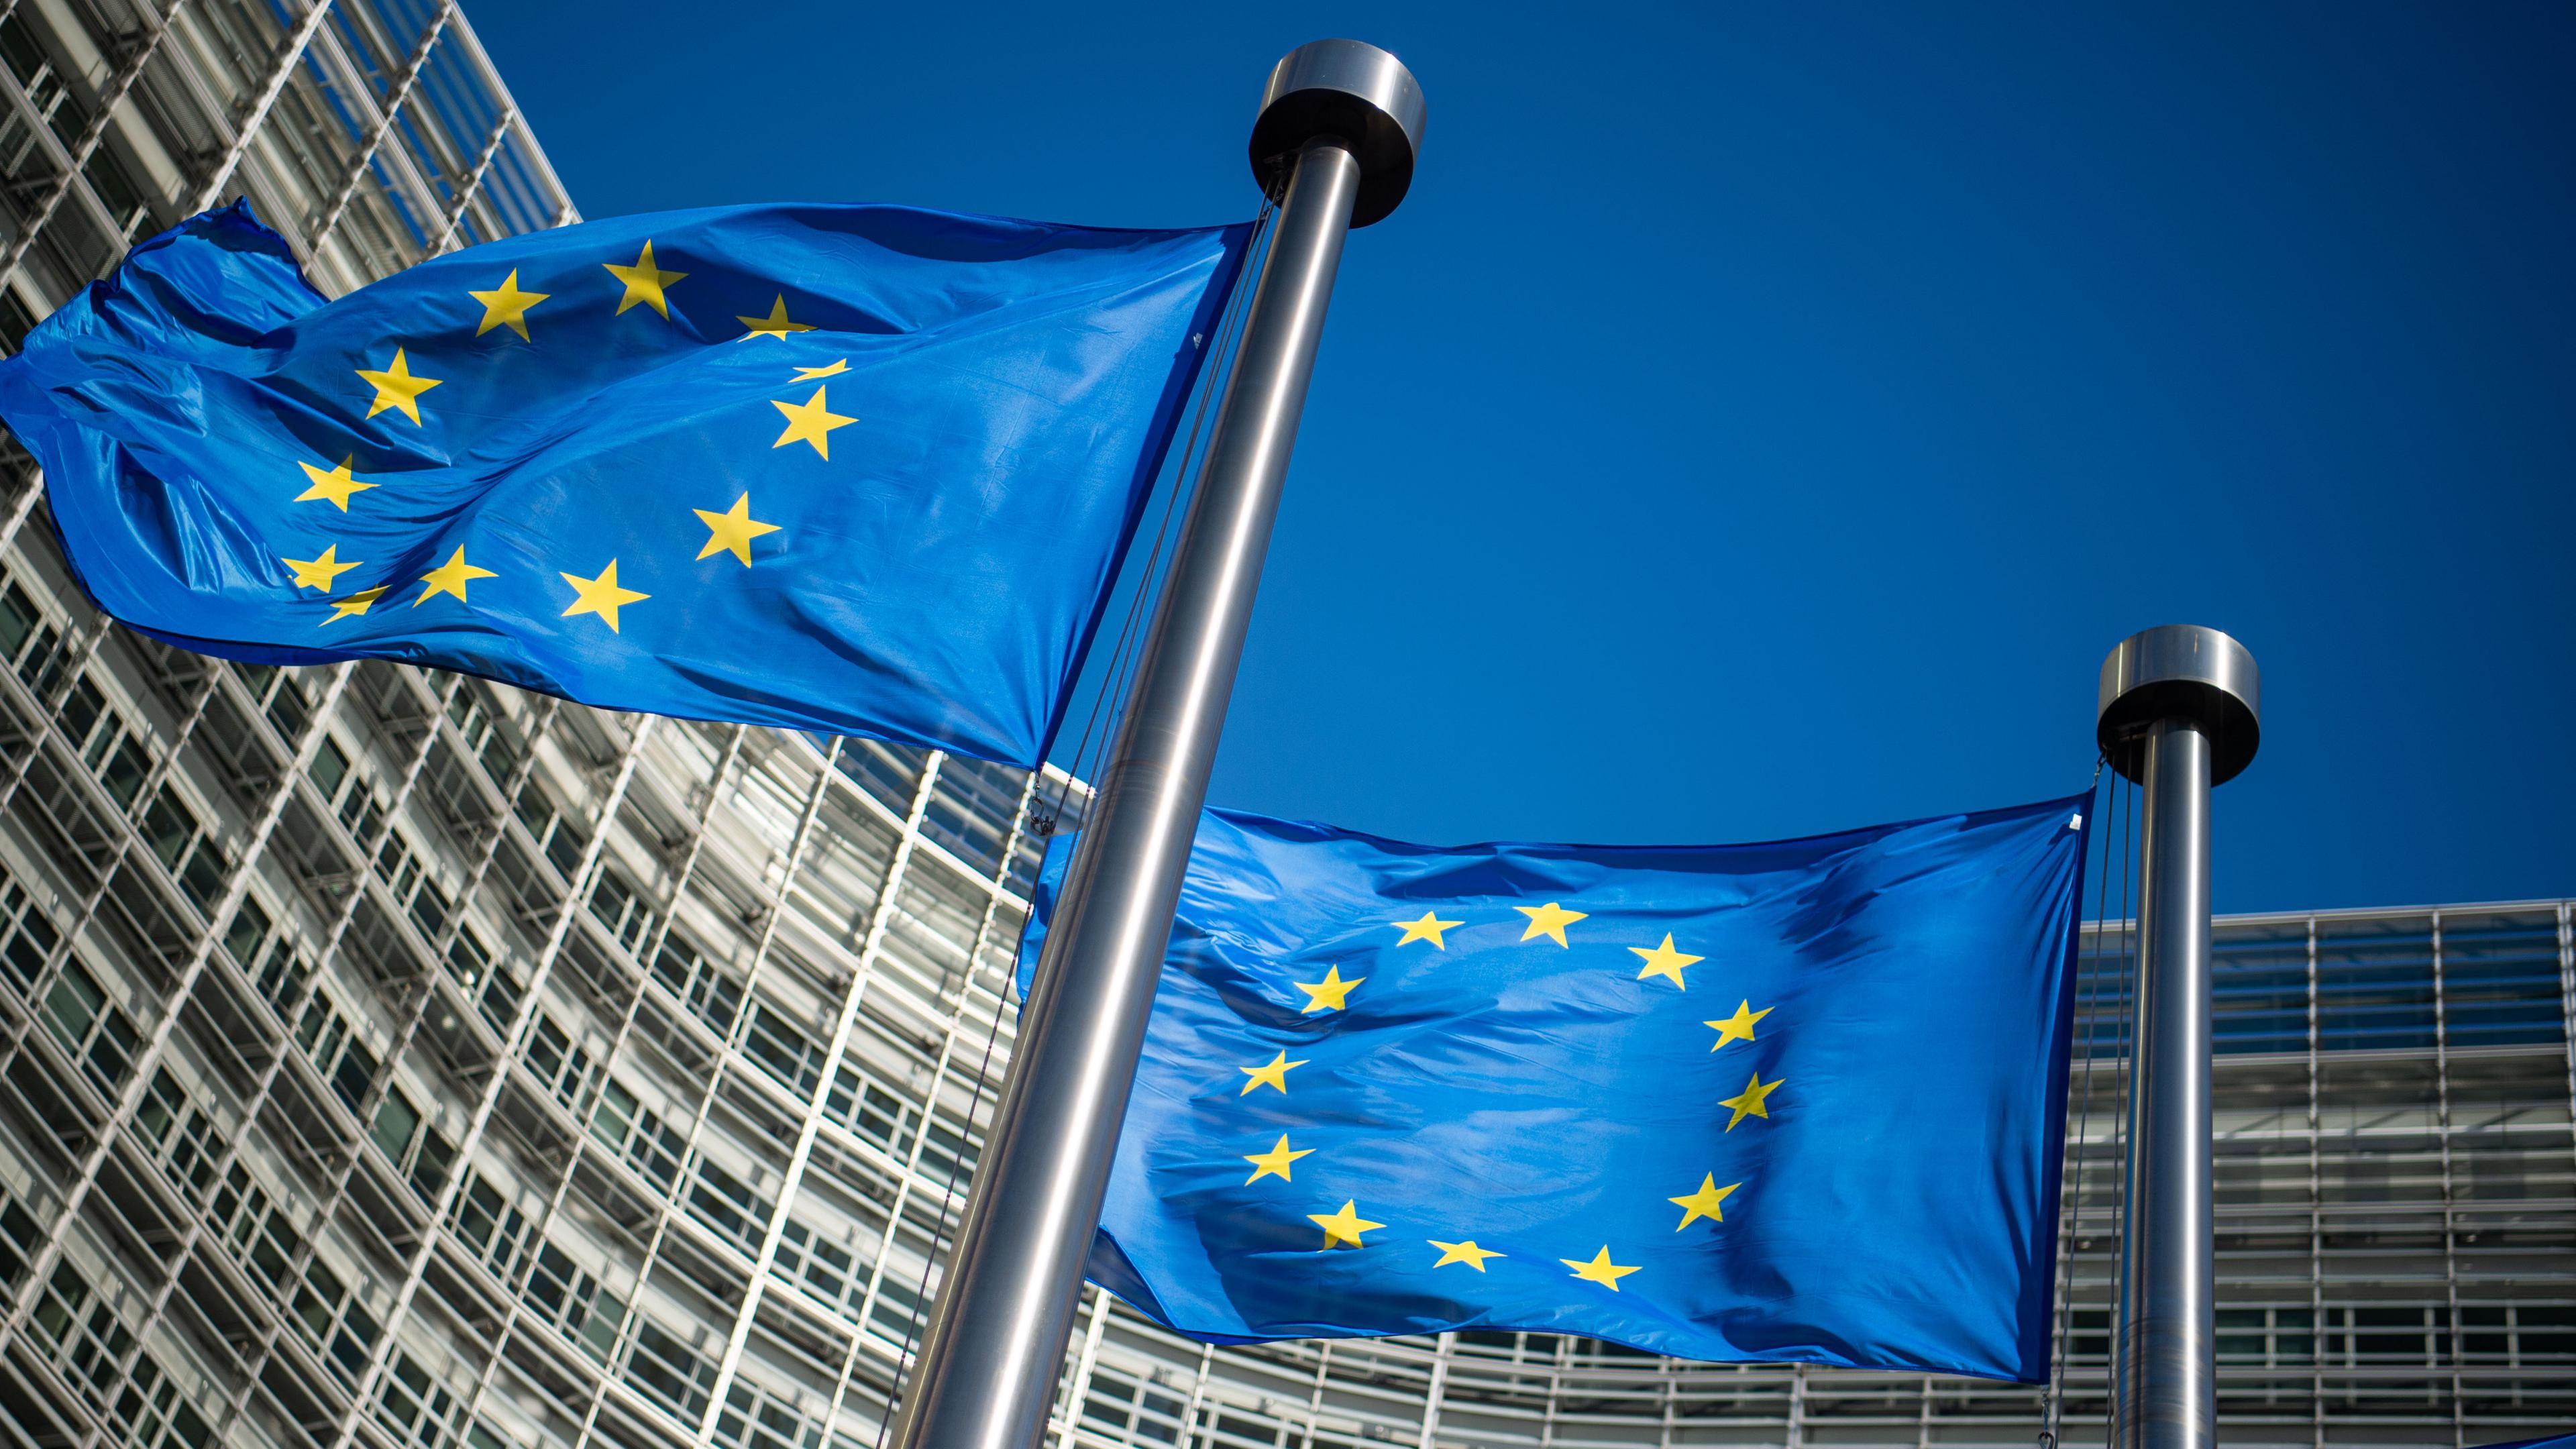 laggen der Europäischen Union wehen im Wind vor dem Berlaymont-Gebäude, dem Sitz der Europäischen Kommission.